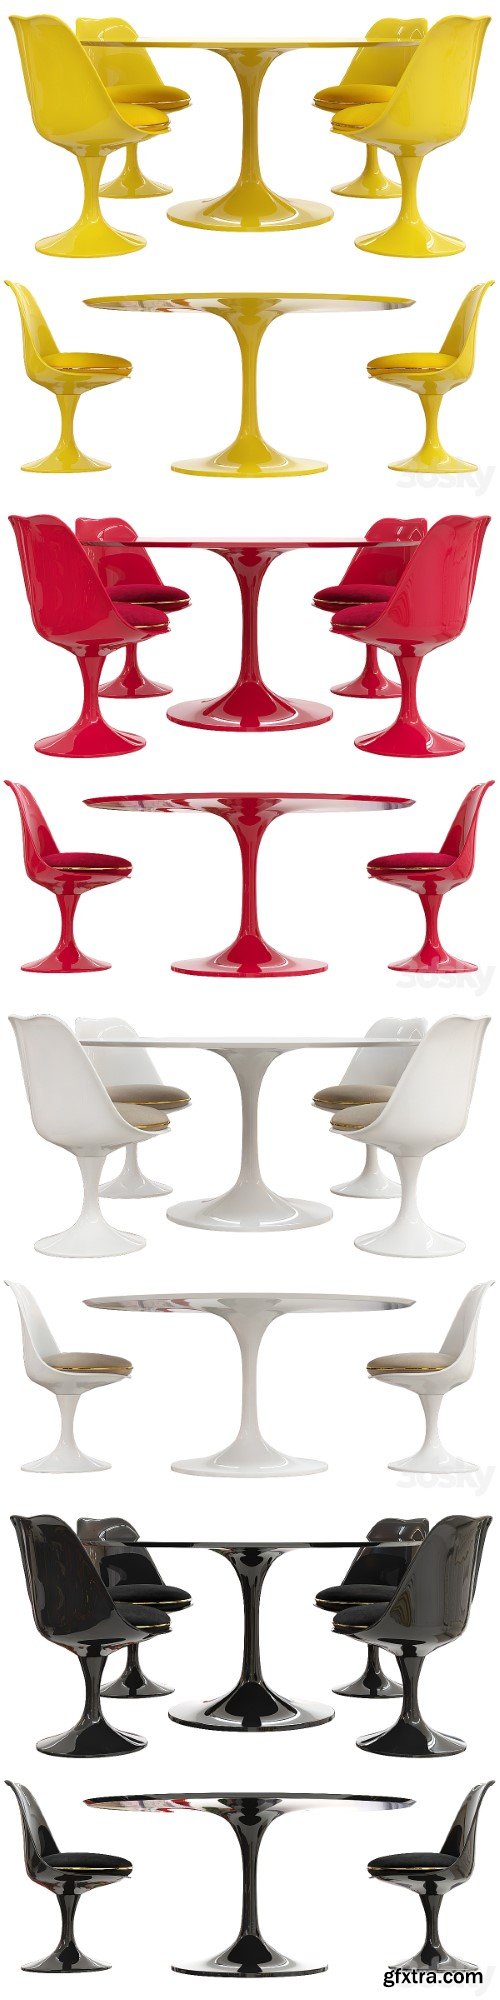 Saarinen tulip table chairs